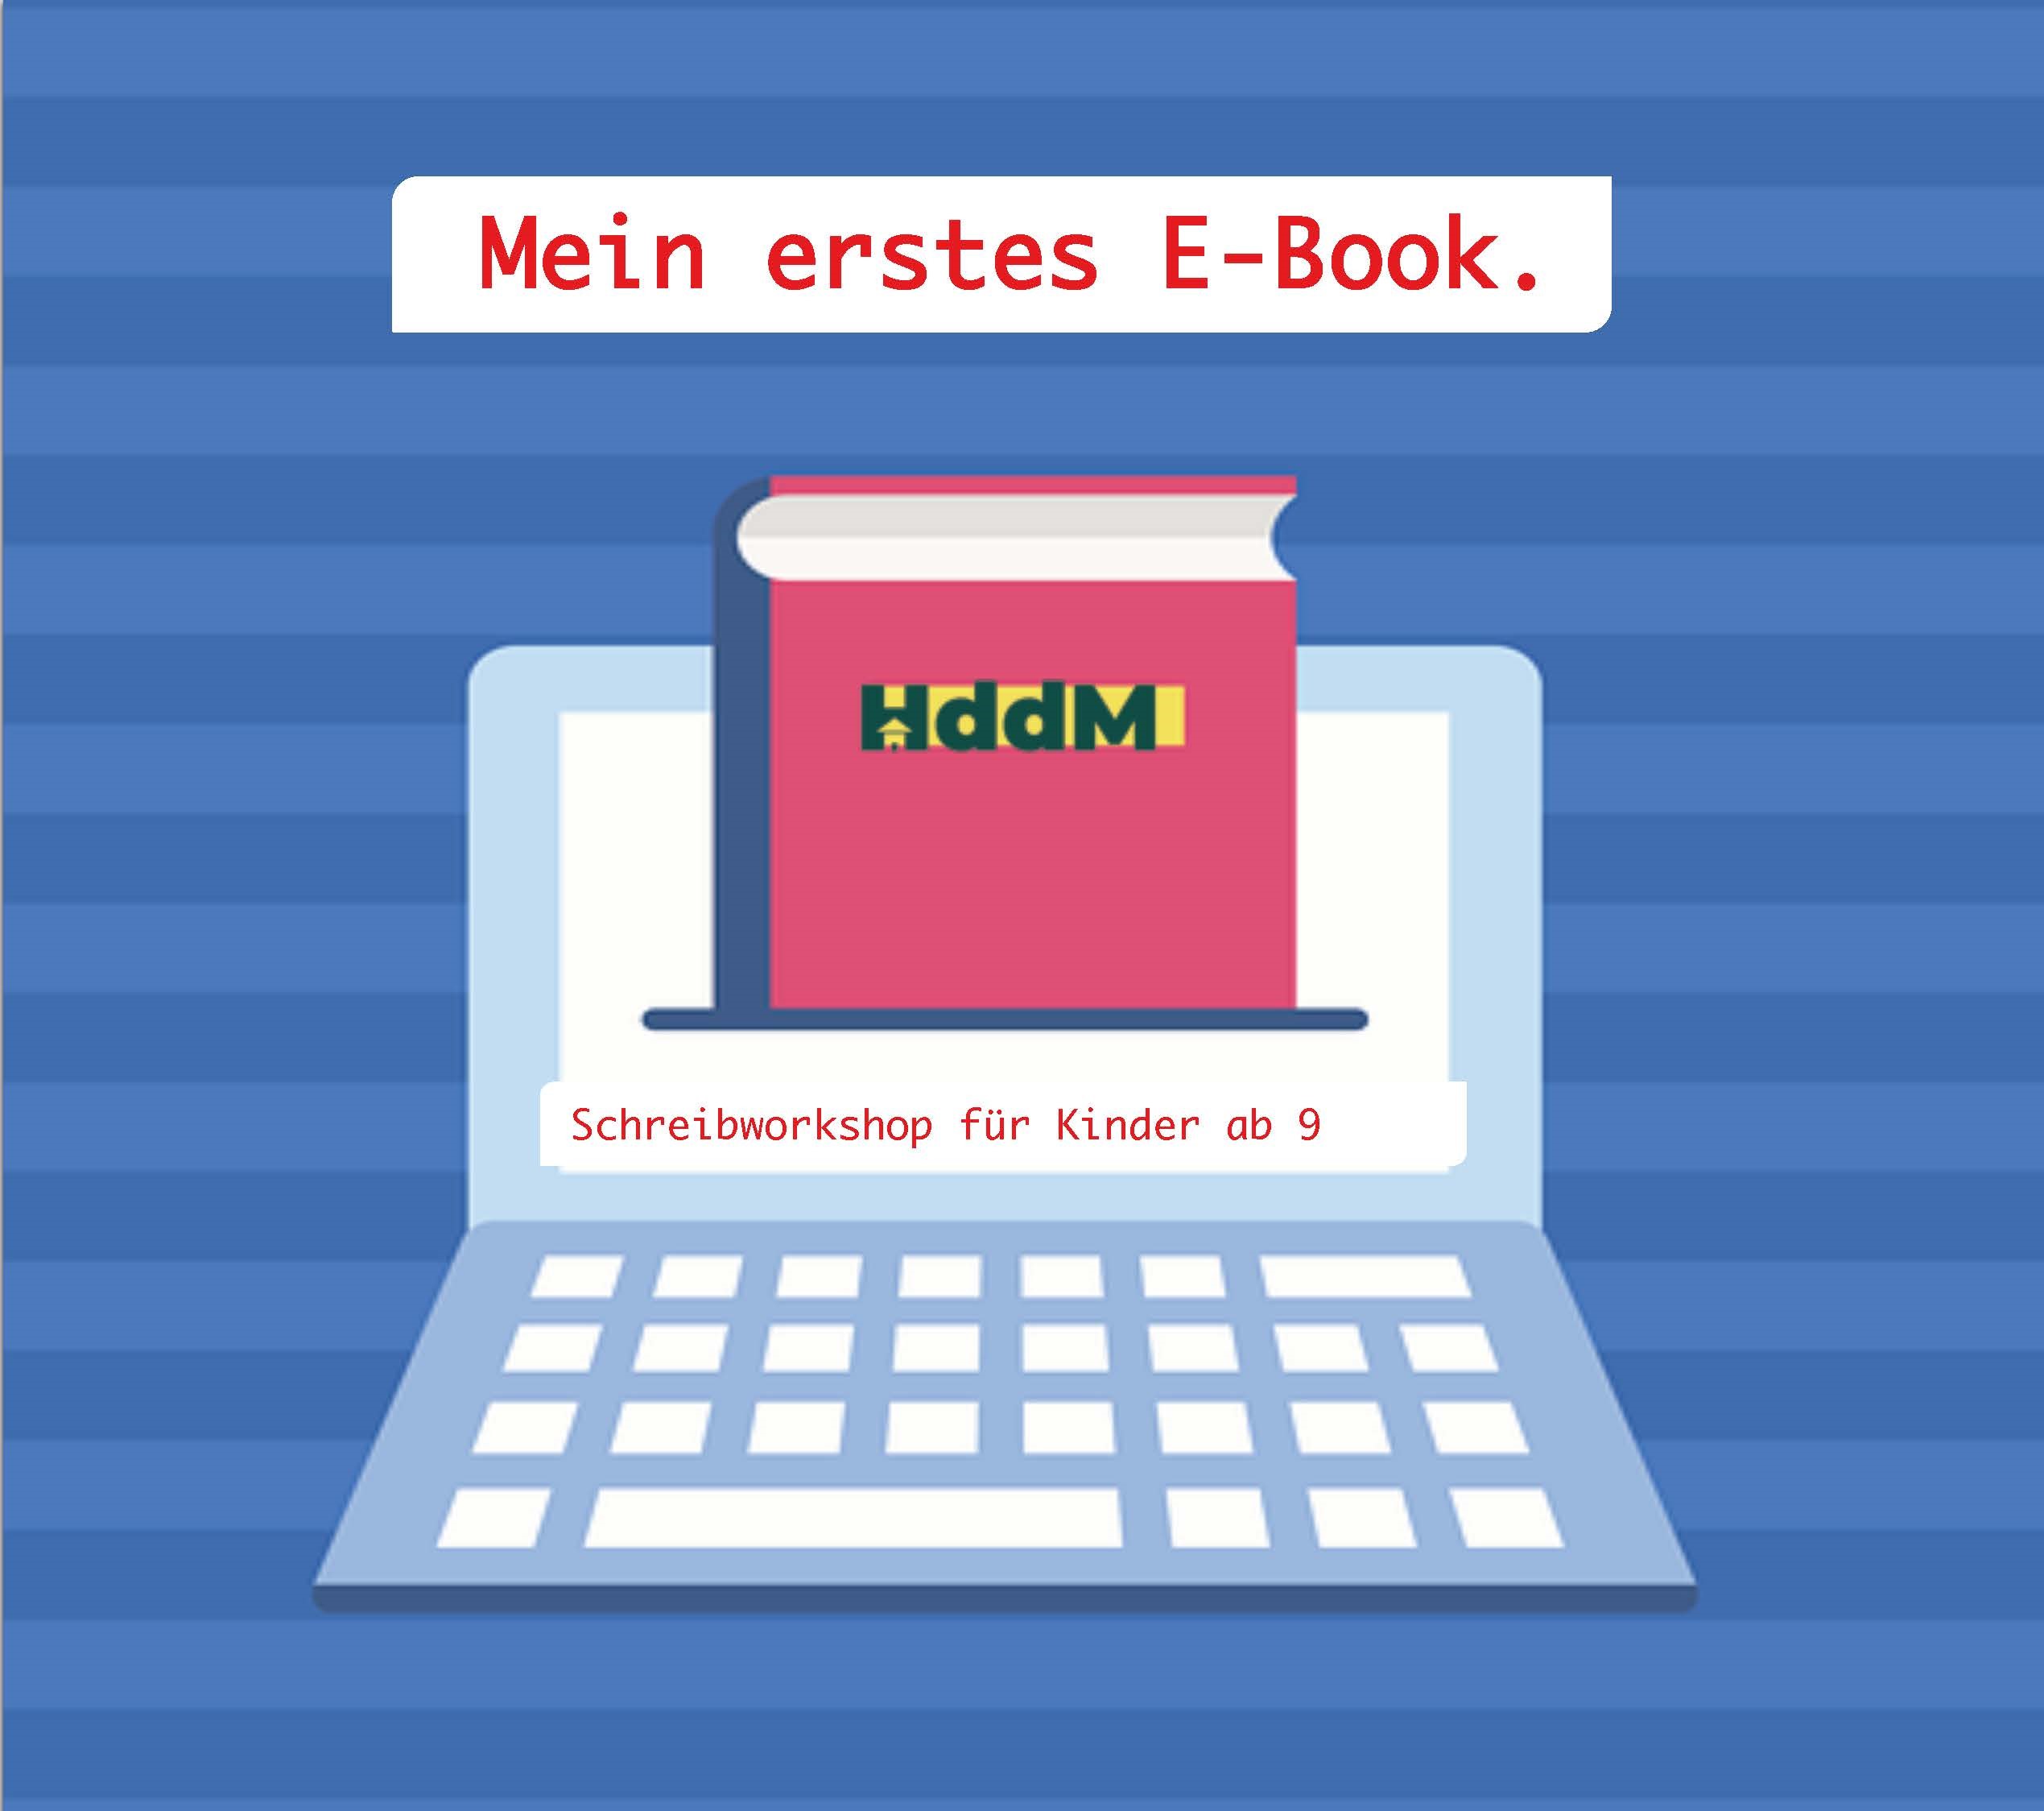 HddM_Forstmeistersamstag_Ebook_Seite_1